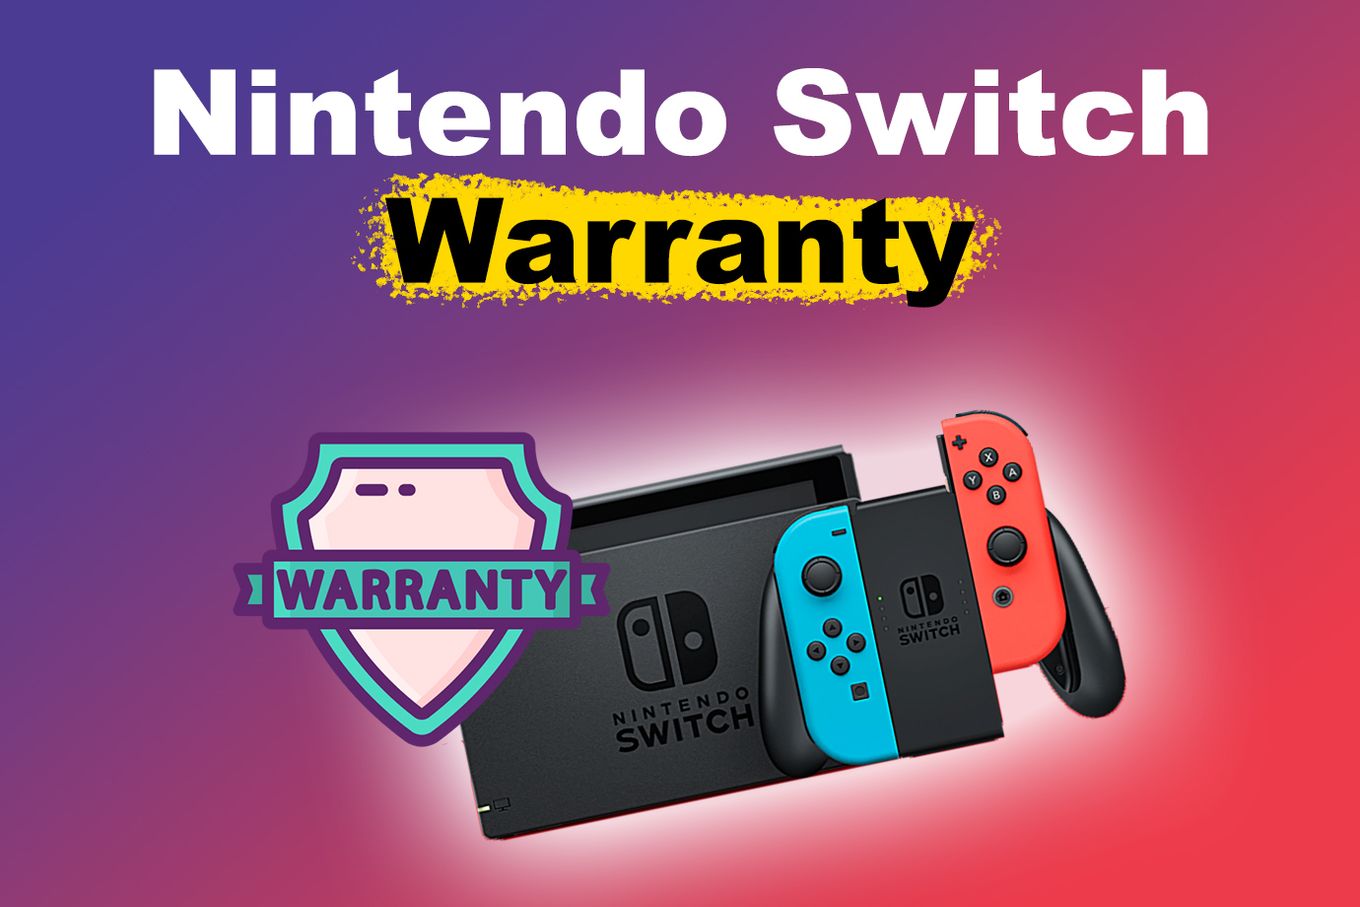 Nintendo Switch Warranty